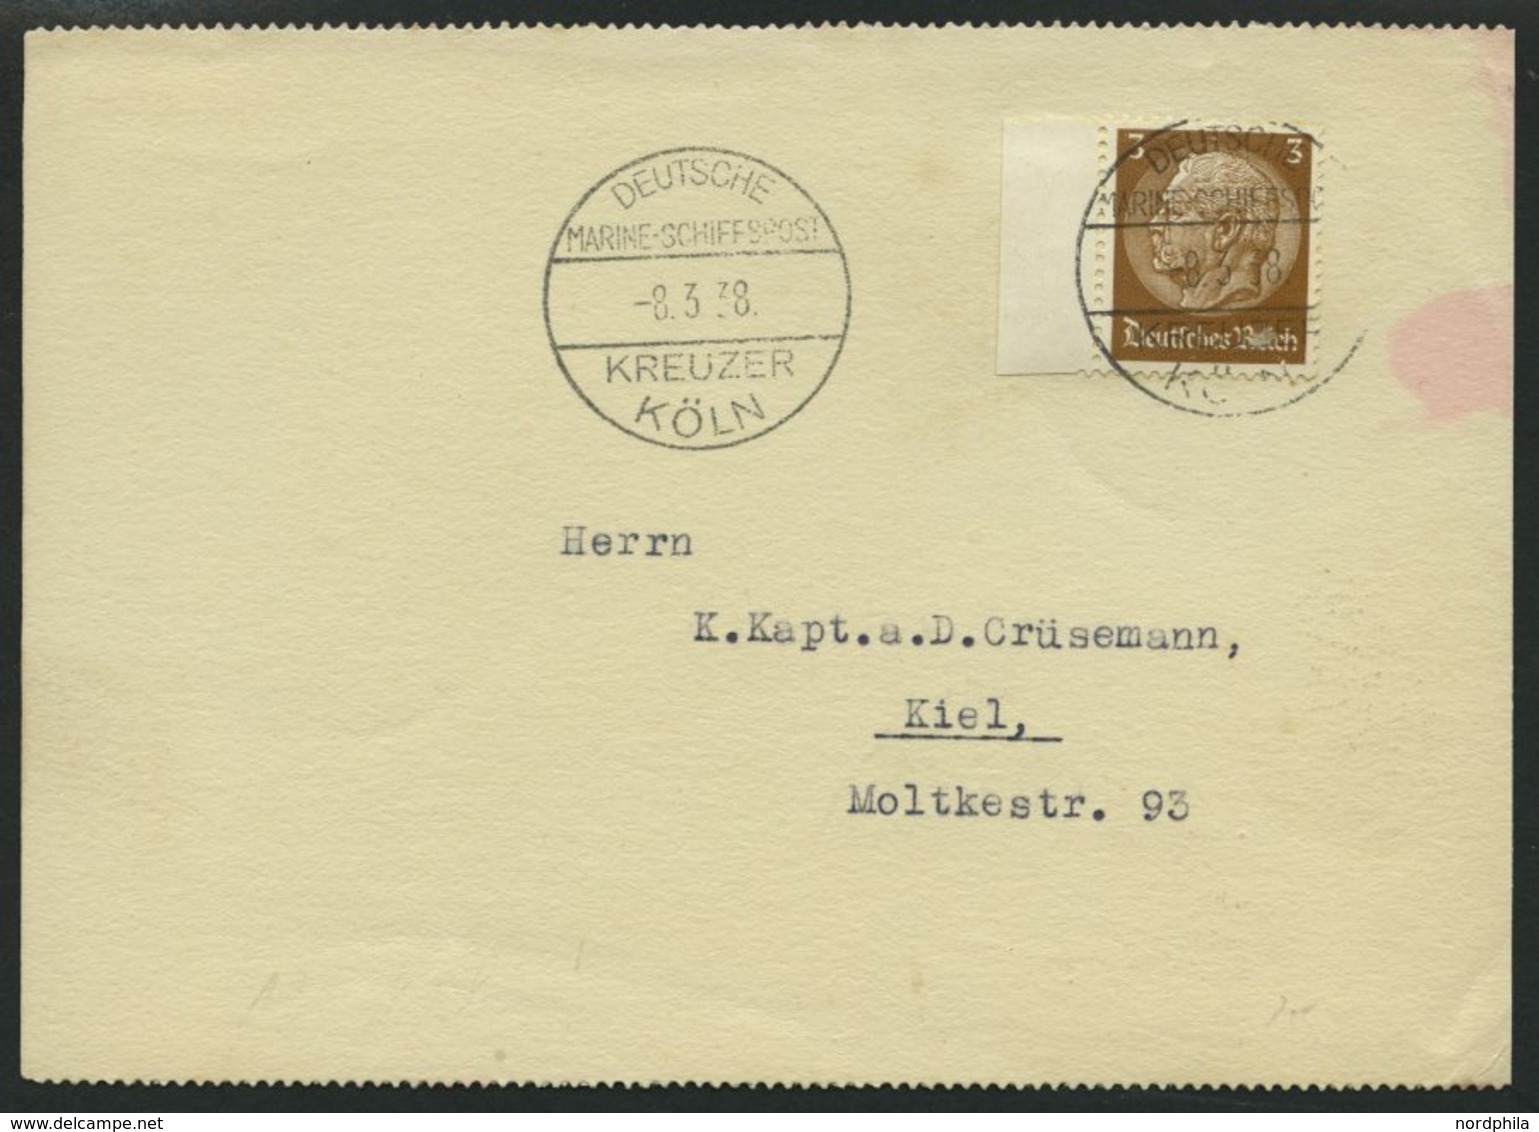 MSP VON 1920 - 1940 DR 513 BRIEF, Kreuzer Köln, 8.3.38, Auf Postkarte (rückseitig Unbeschriftet) An Kapt. A.D. Crüsemann - Schiffahrt